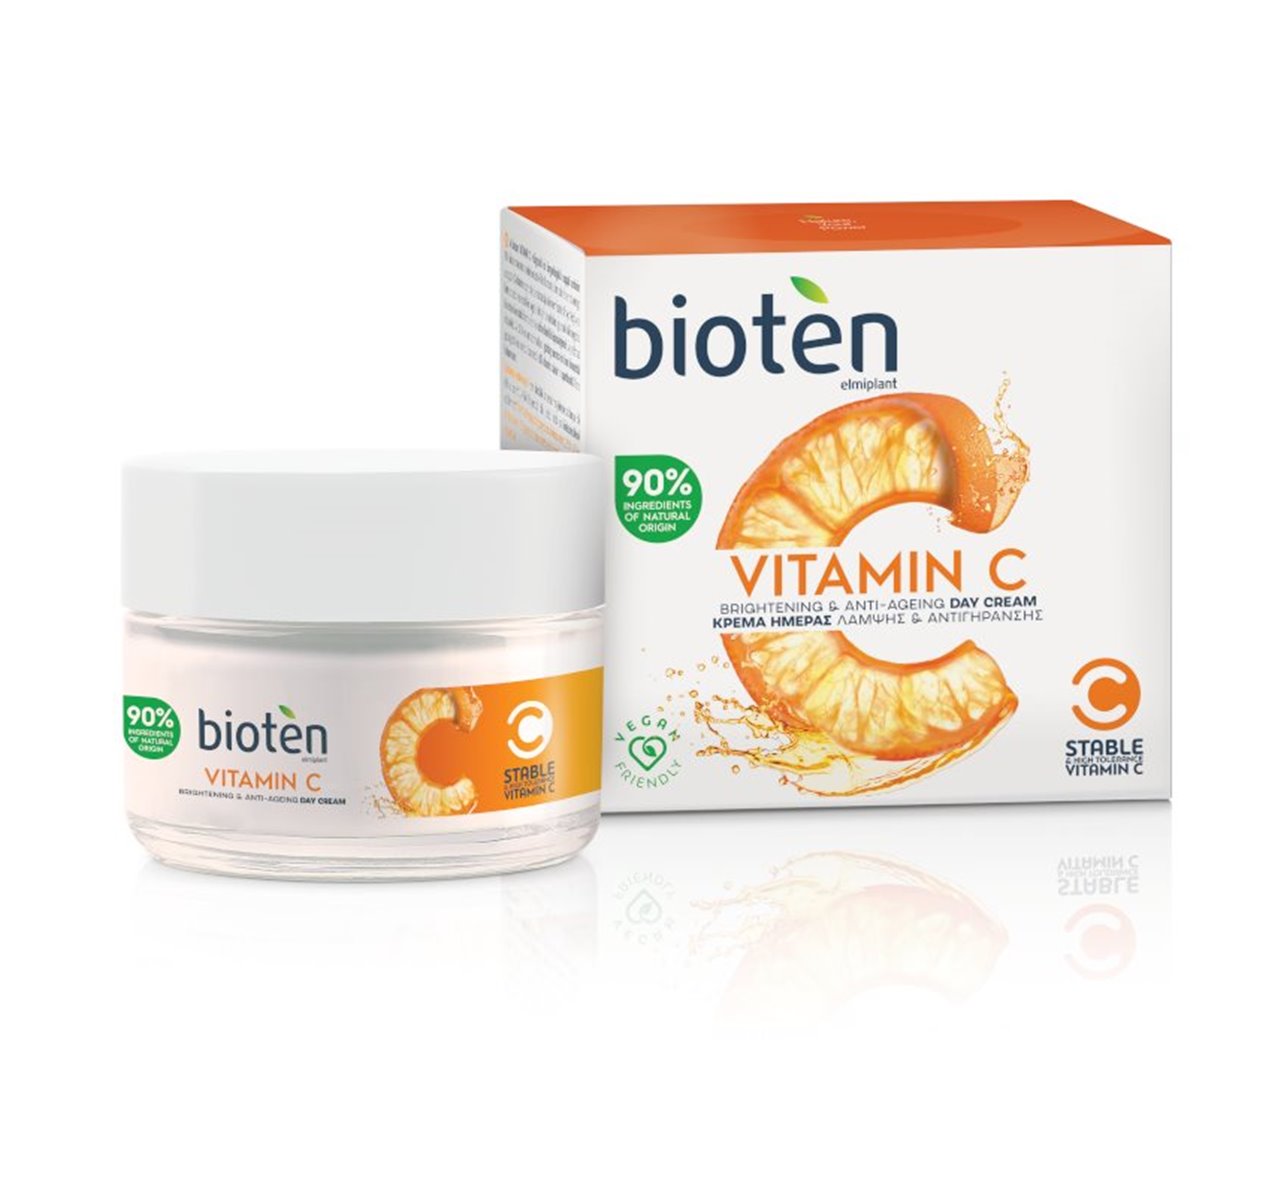 bioten vitamin c day cream 50ml beautyaz